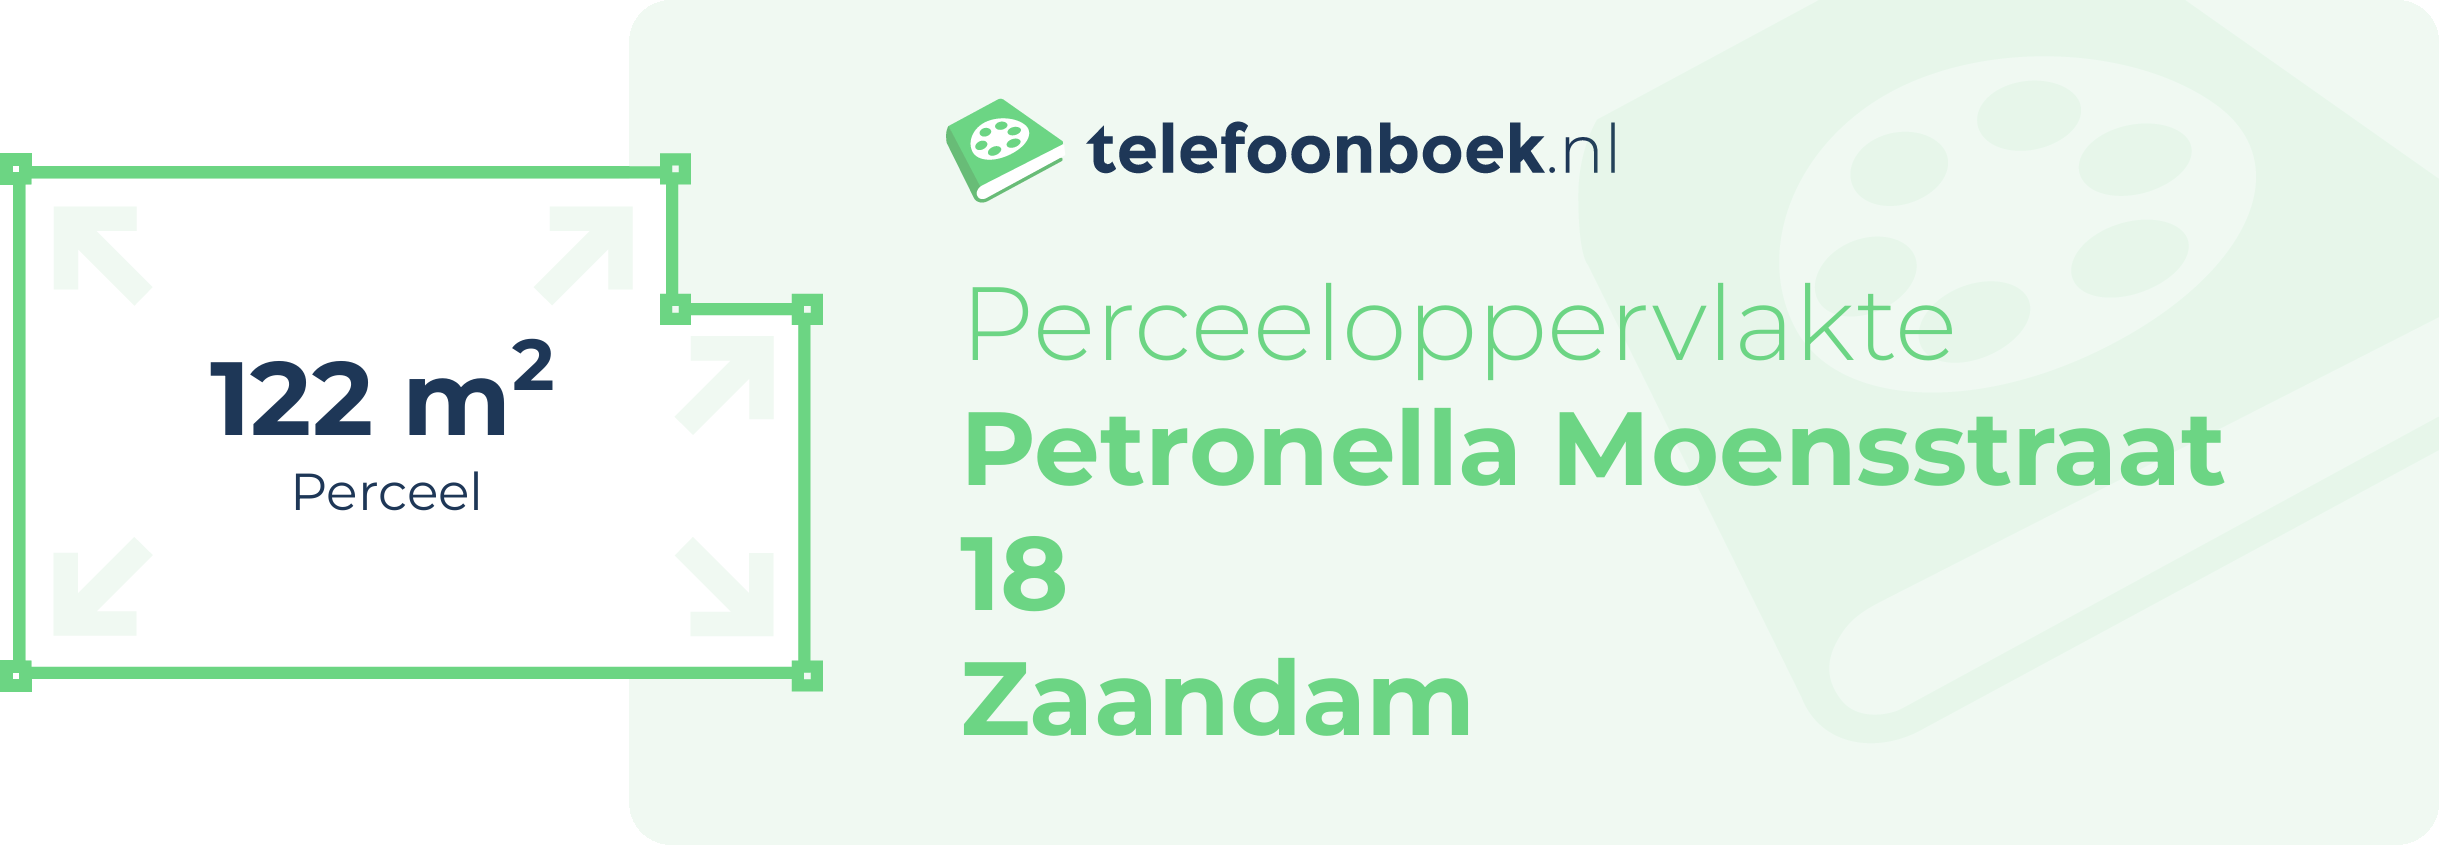 Perceeloppervlakte Petronella Moensstraat 18 Zaandam